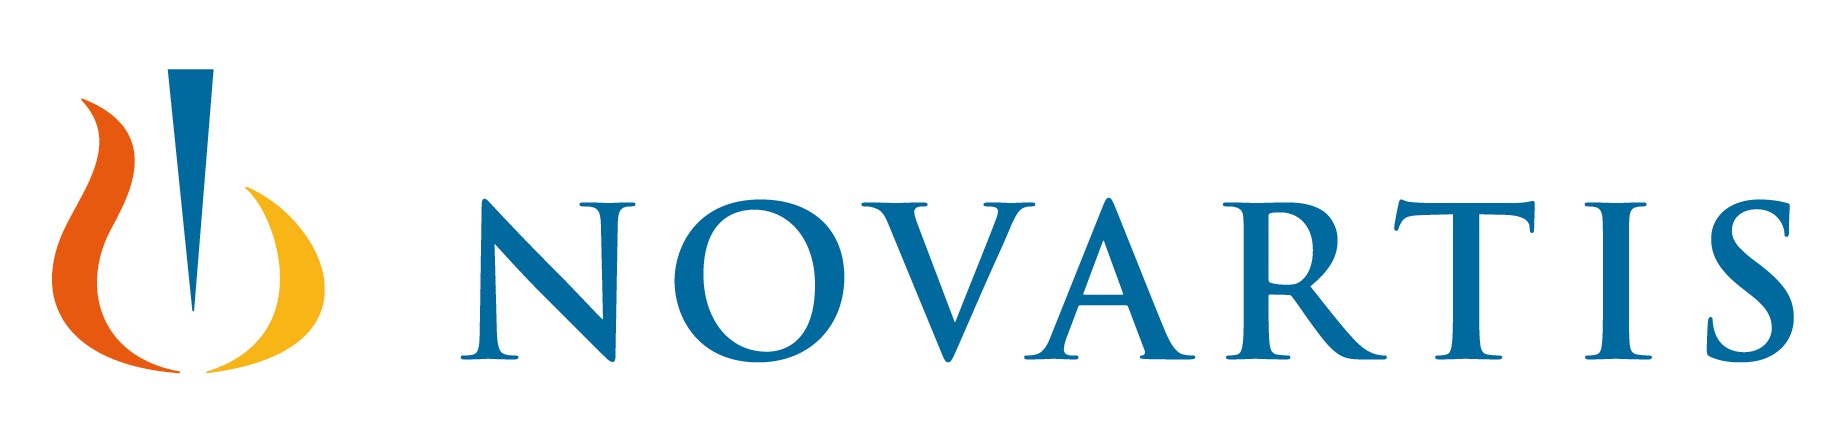 Novartis Vaccines Logo photo - 1